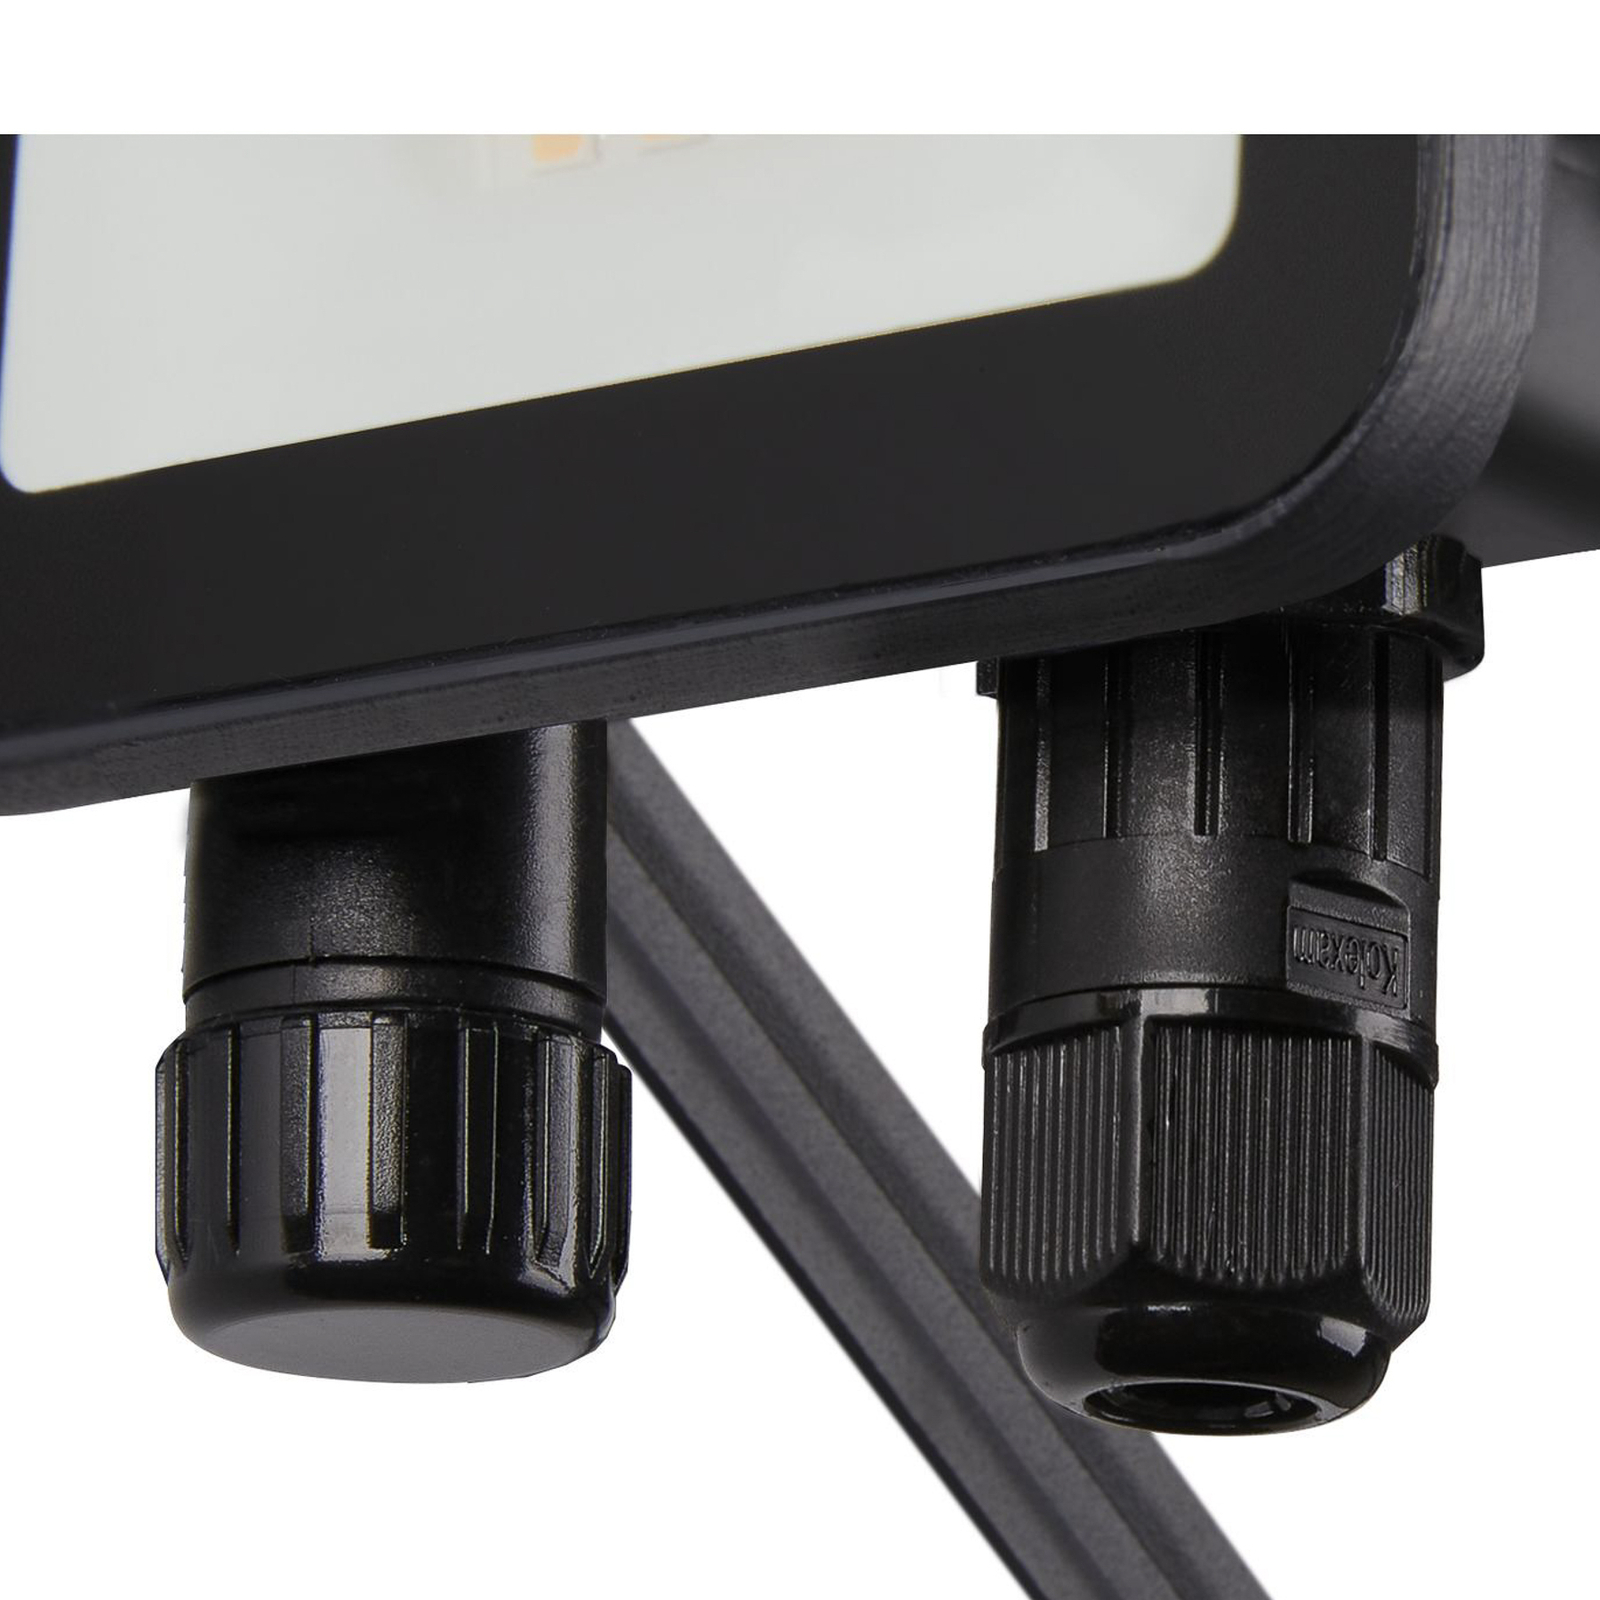 SLV Floodi LED projetor de exterior, IP65, largura 9,5 cm